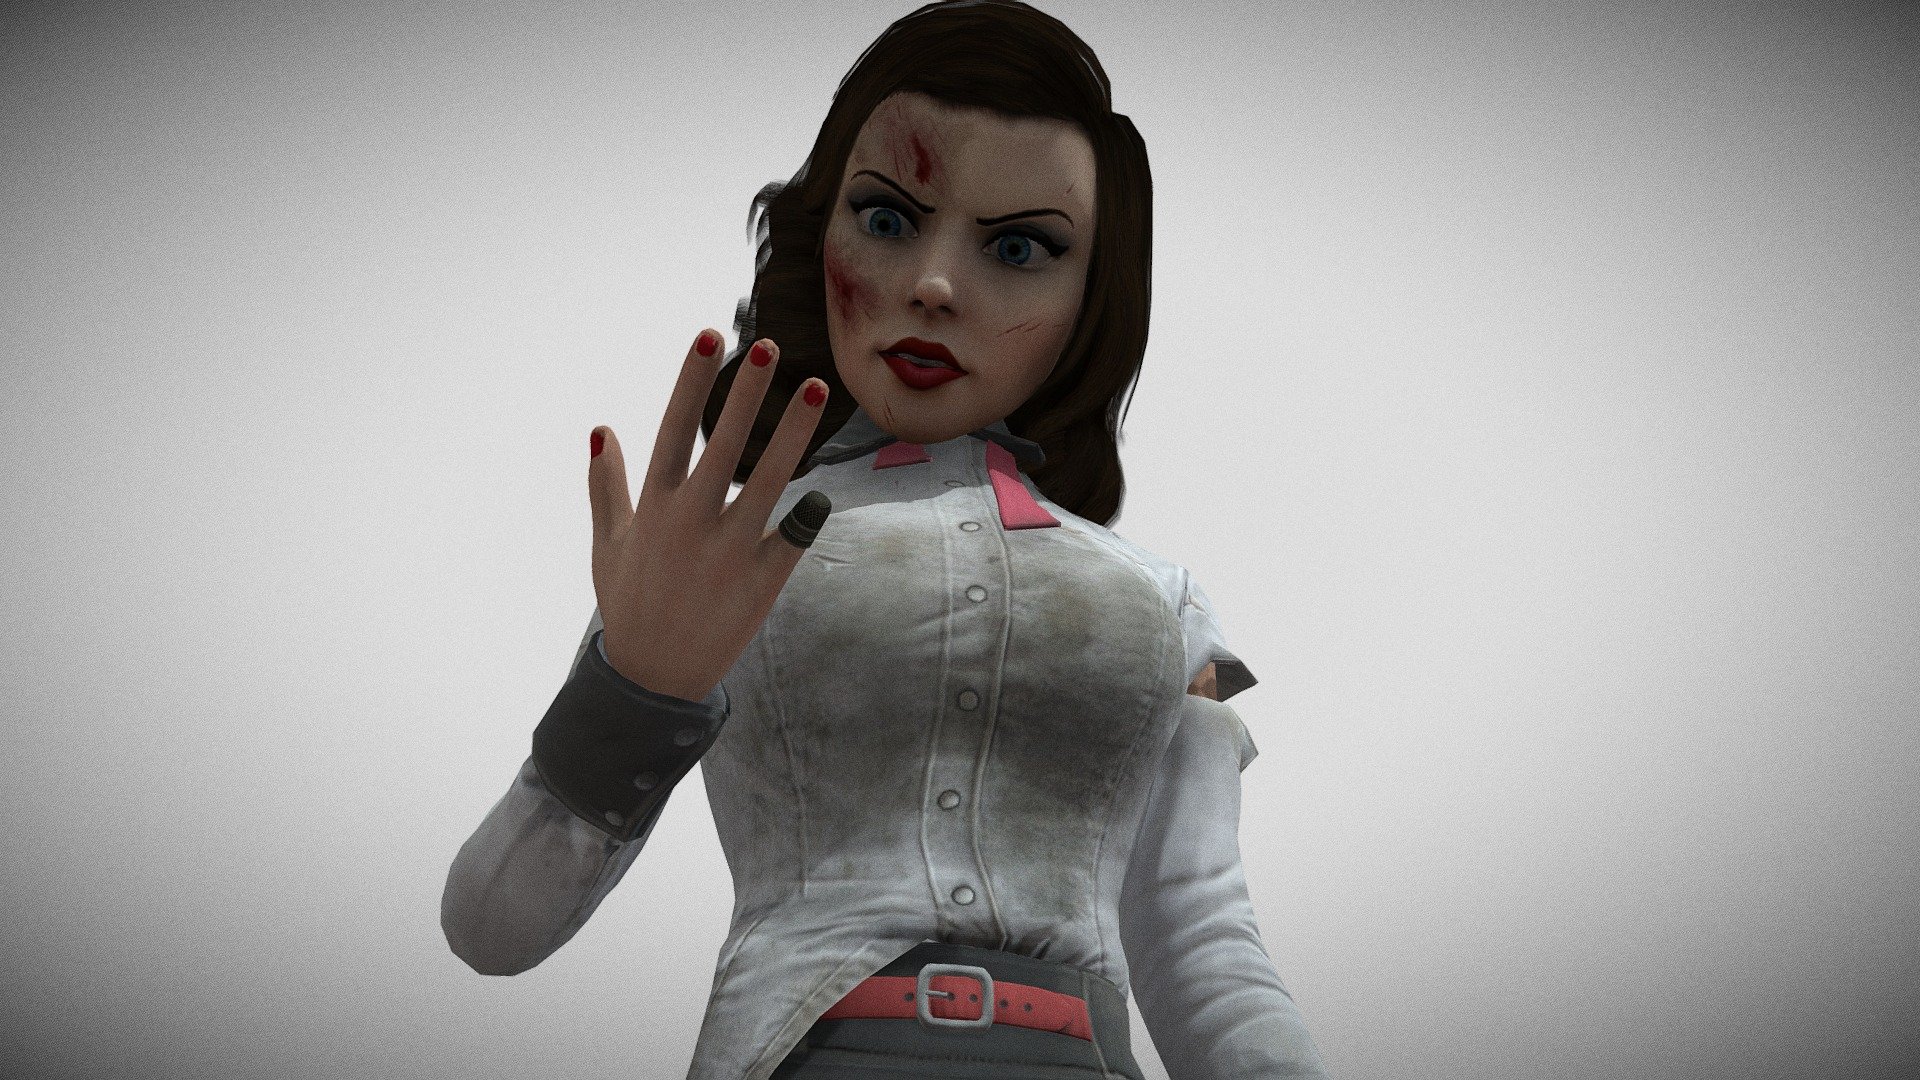 Elizabeth Bioshock Infinite 3d Model By Trolosqlfod [4fa0032] Sketchfab